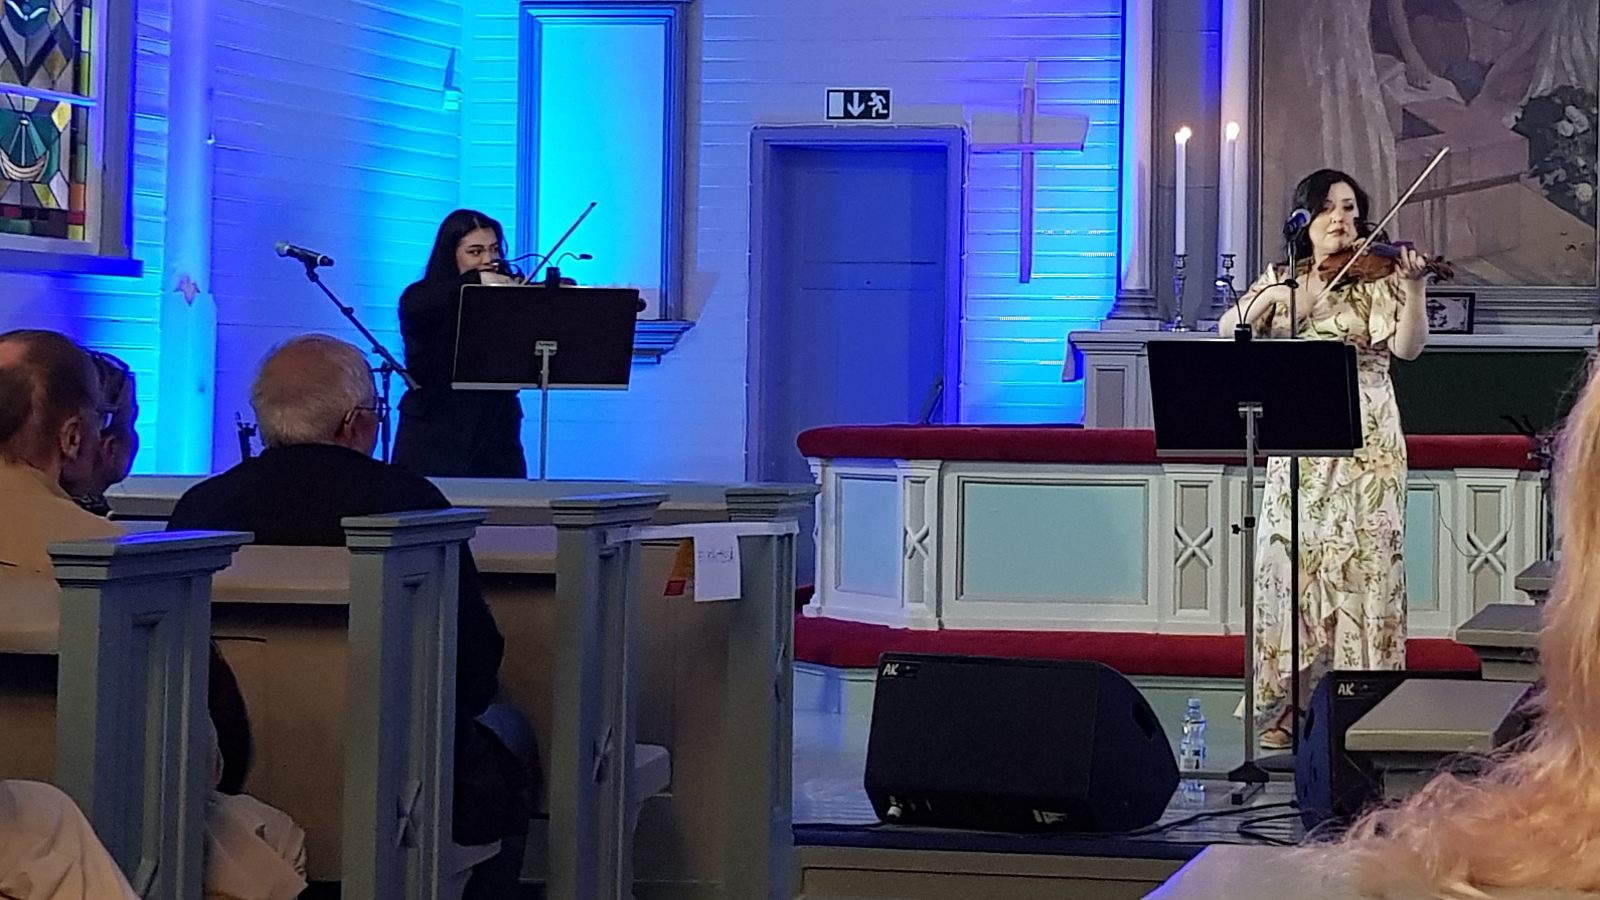 Kuvassa on vasemmalla Deidre Flores soittamassa viulua ja oikealla Diandra soittamassa myös viulua Virolahden kirkon etuosassa.